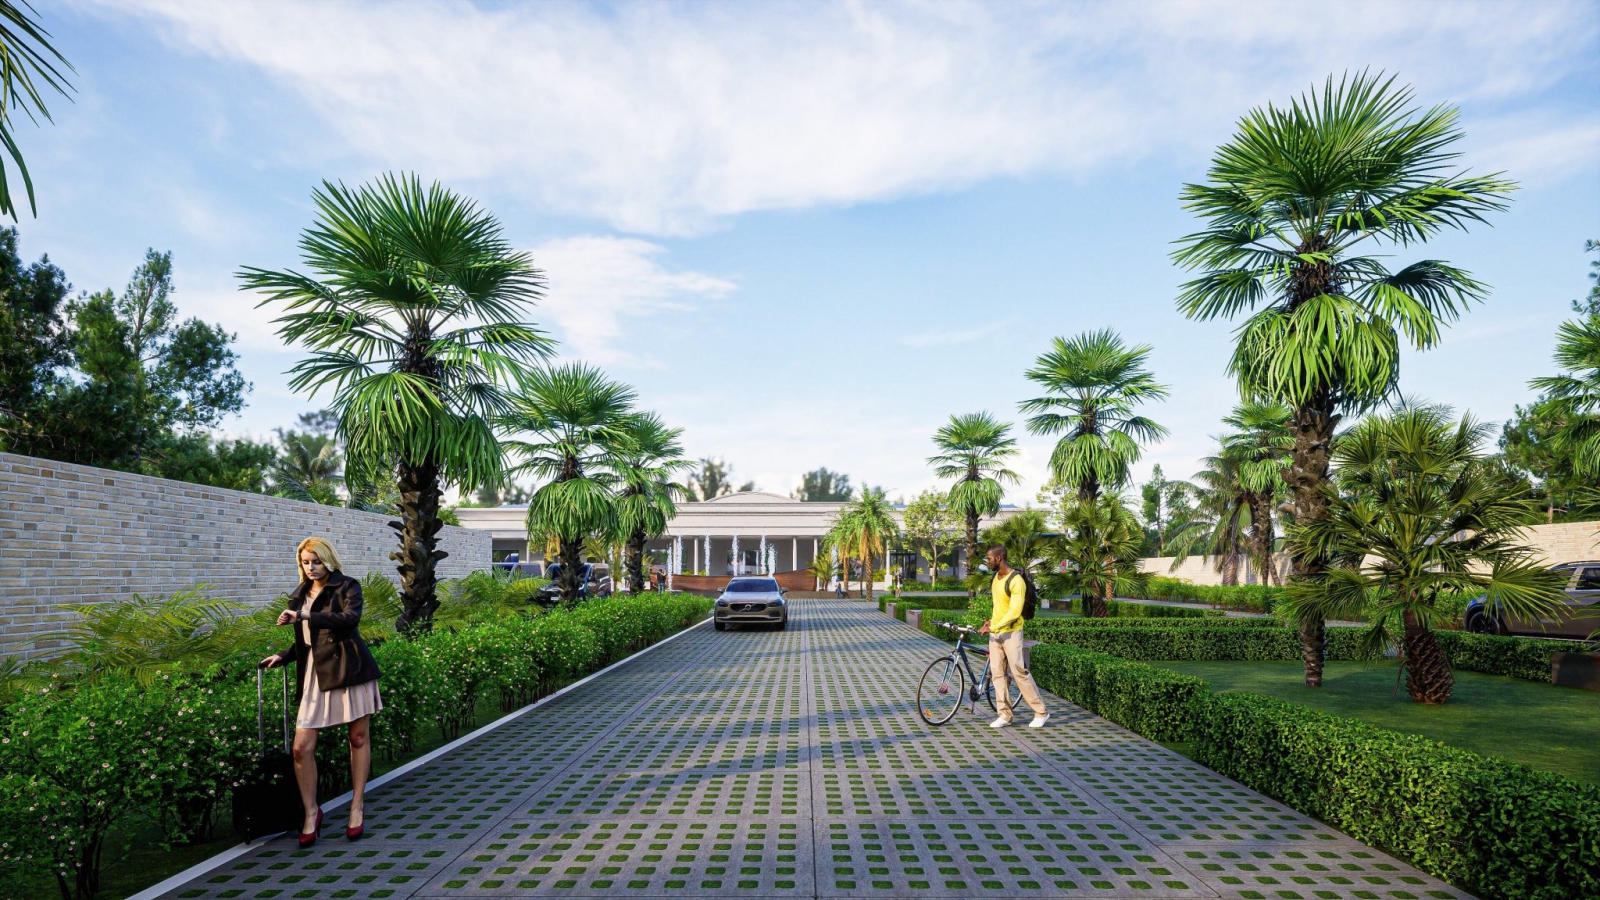 thi công, thiết kế sân vườn đẹp và phong thuỷ tại Đà Nẵng